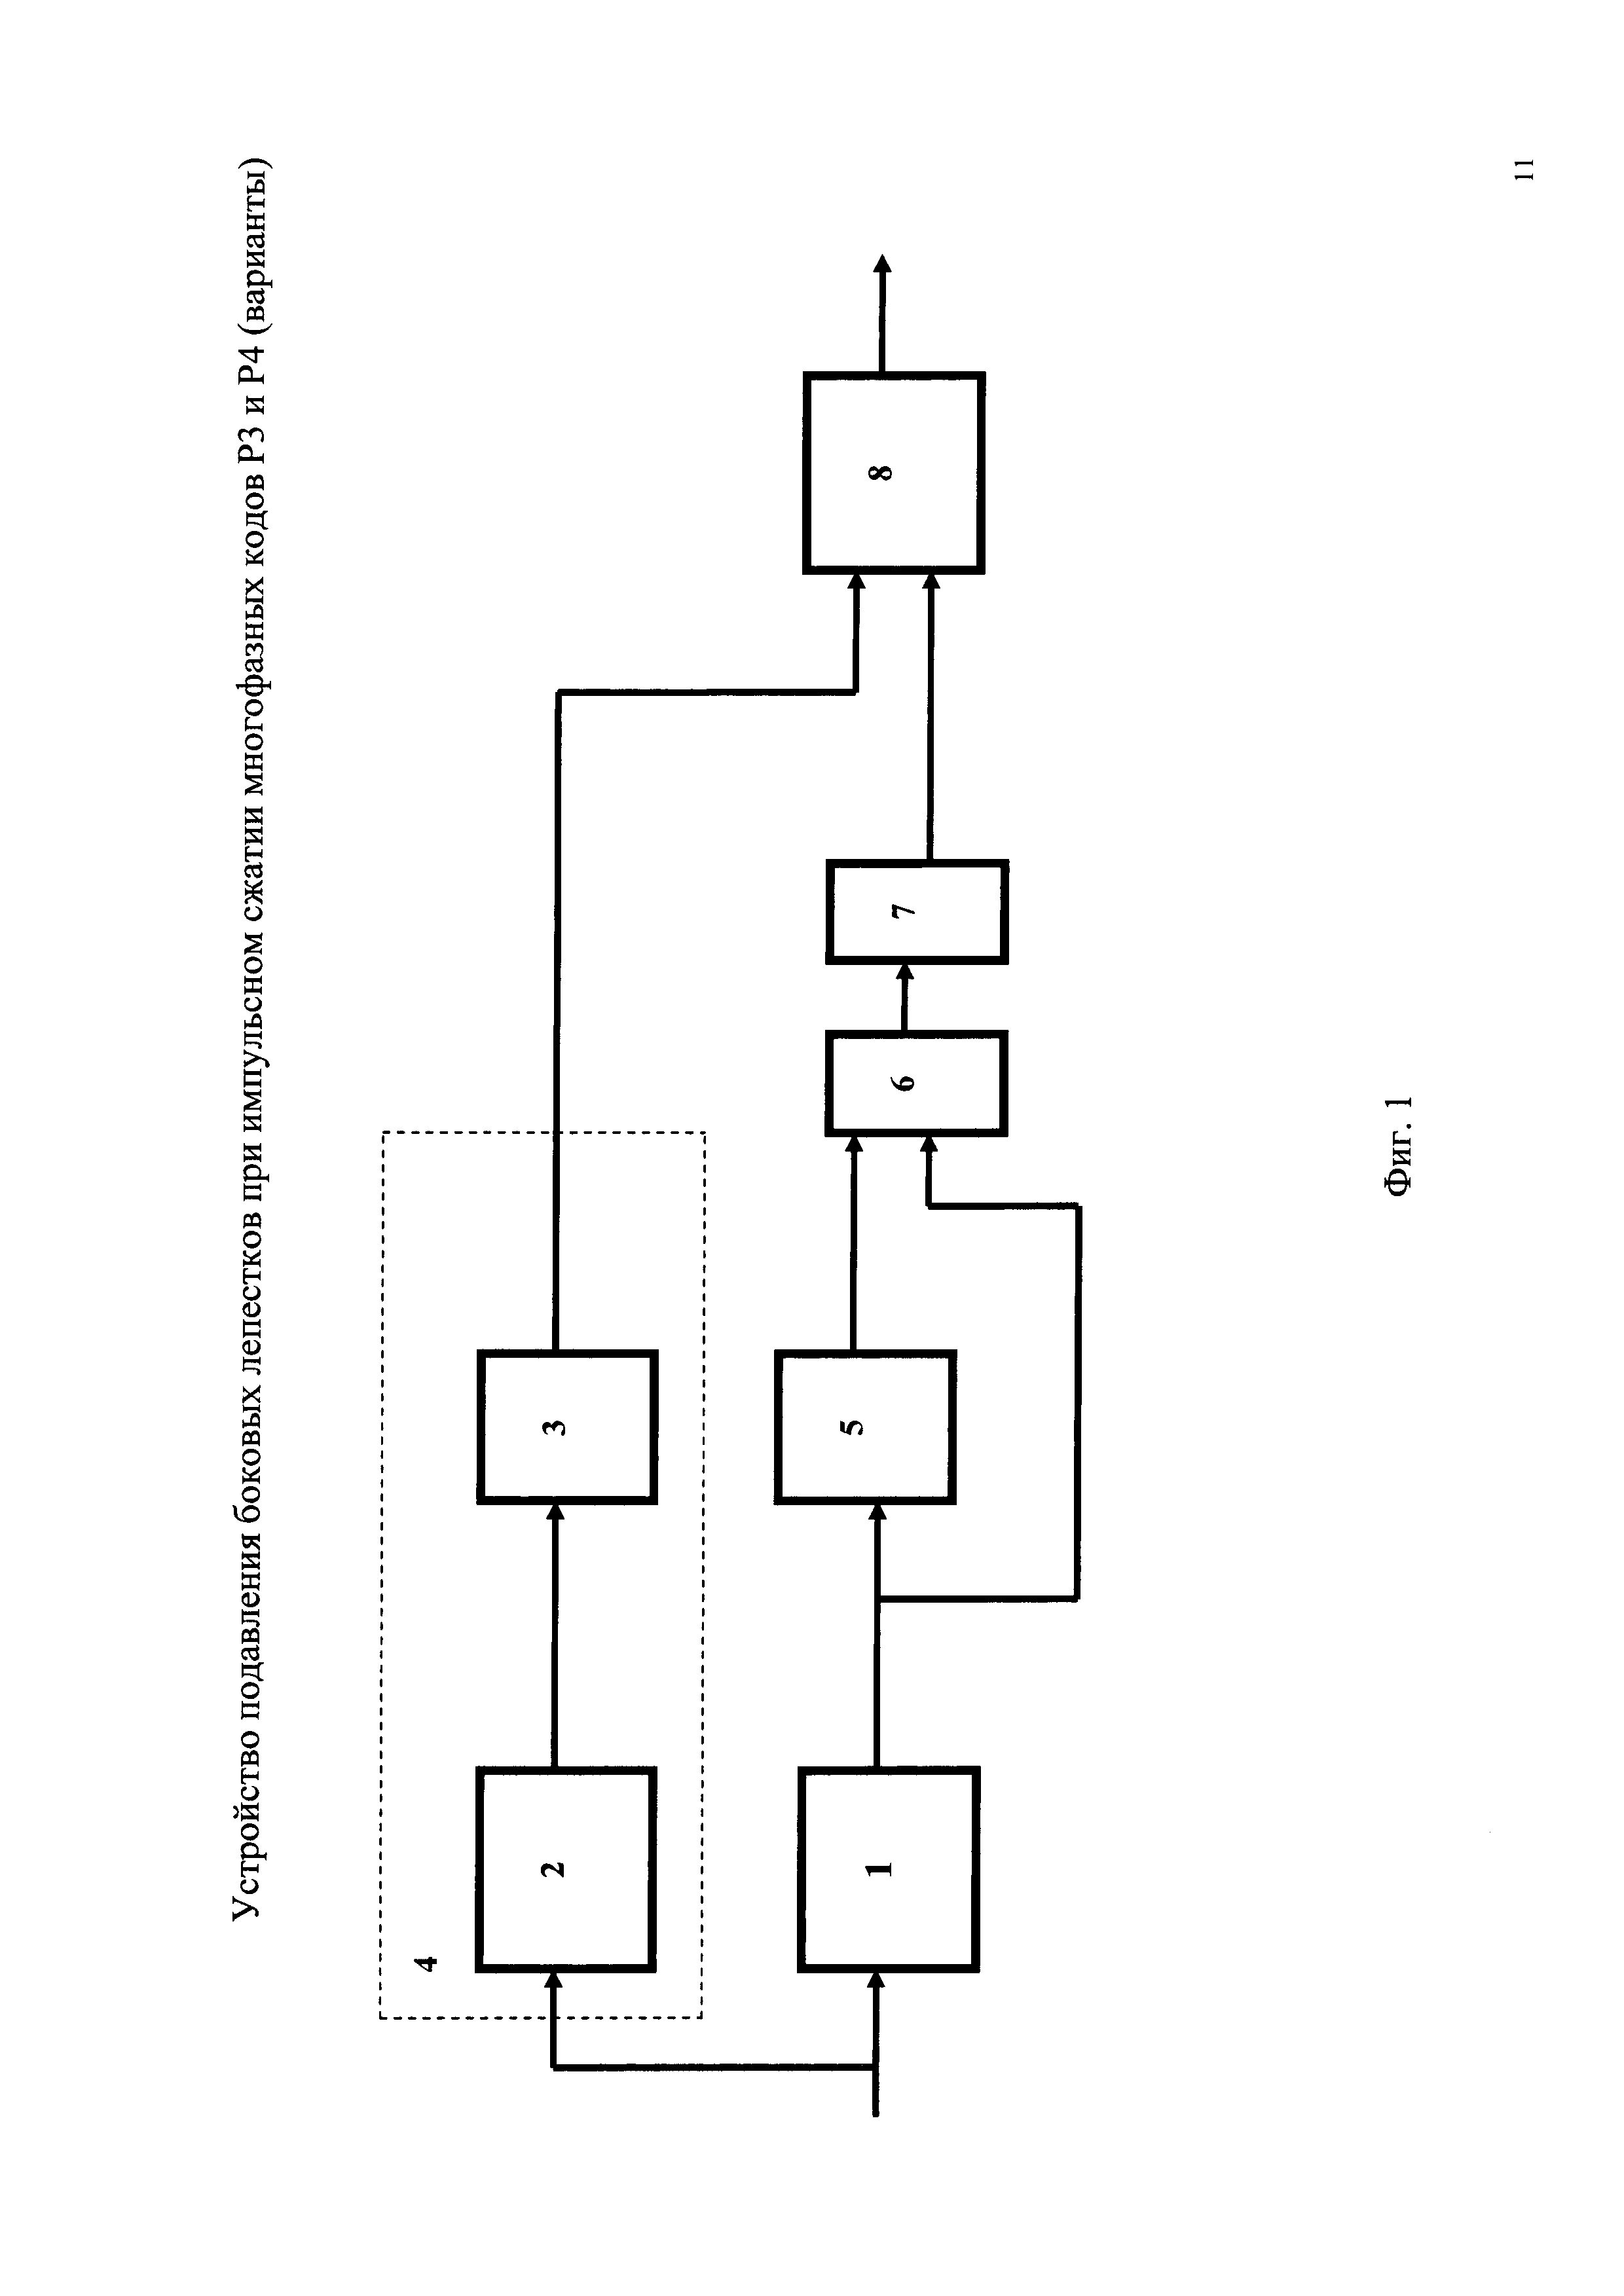 Устройство подавления боковых лепестков при импульсном сжатии многофазных кодов Р3 и Р4 (варианты)